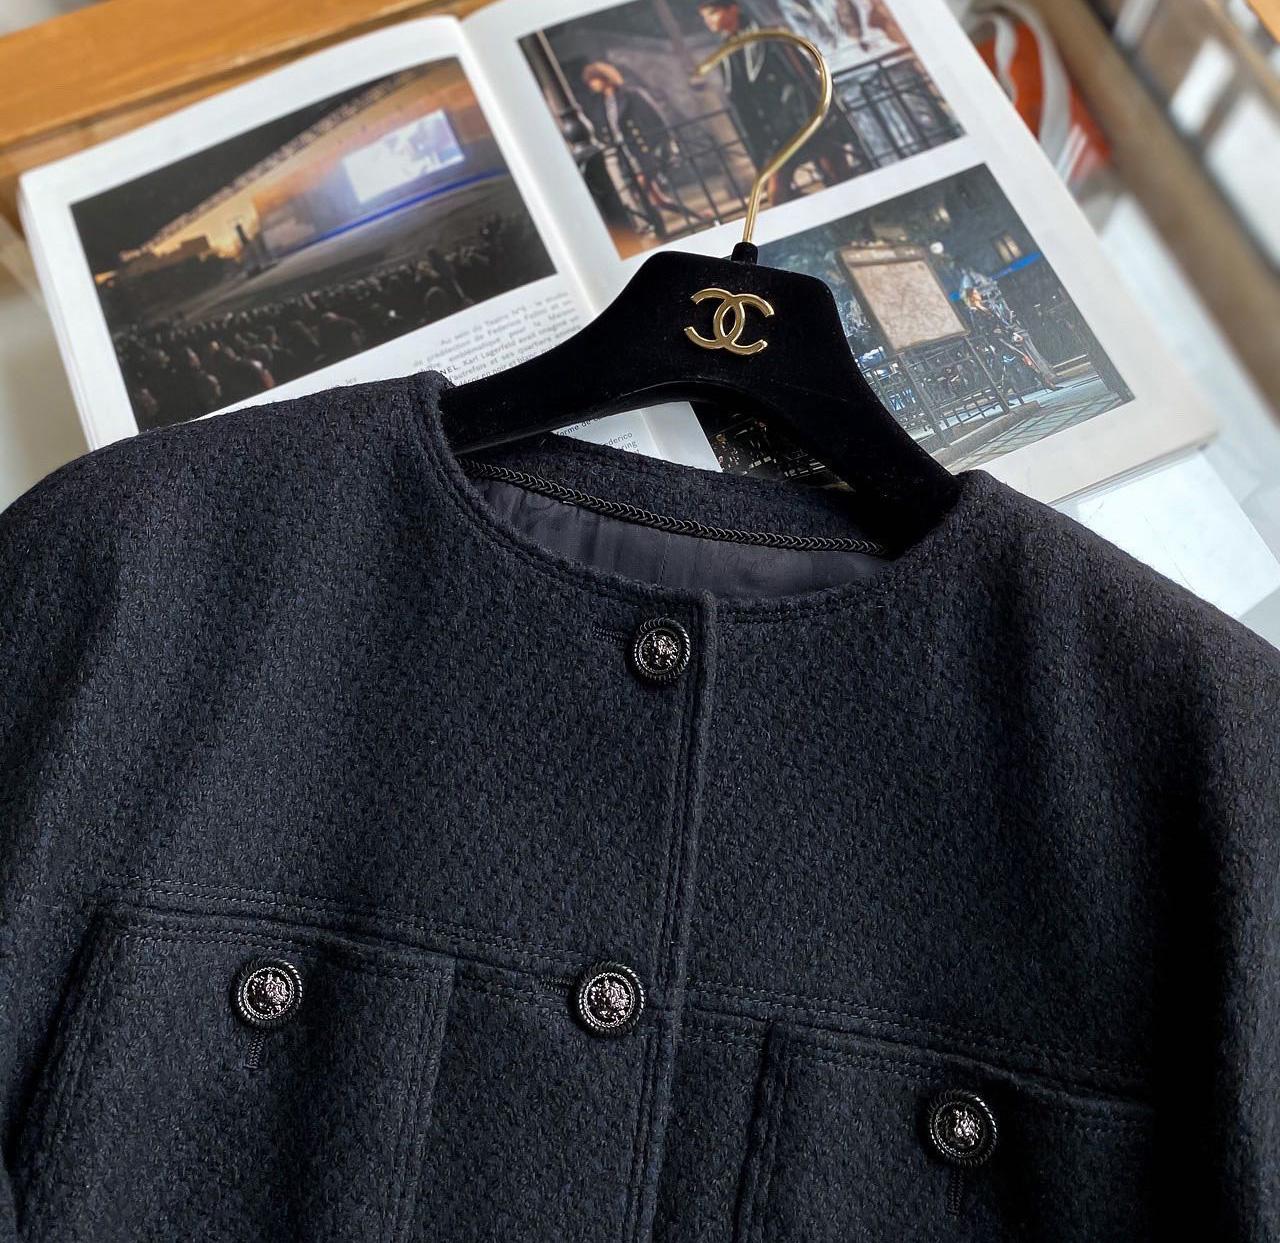 Manteau en tweed noir et marine de Chanel, Paris / Collection EDINRBURGH, 2013 Metiers d'Art
- Boutons CC avec têtes de lion
- silhouette emblématique à 4 poches
- doublure en soie ton sur ton avec camélias
Taille 40 FR. Jamais porté.